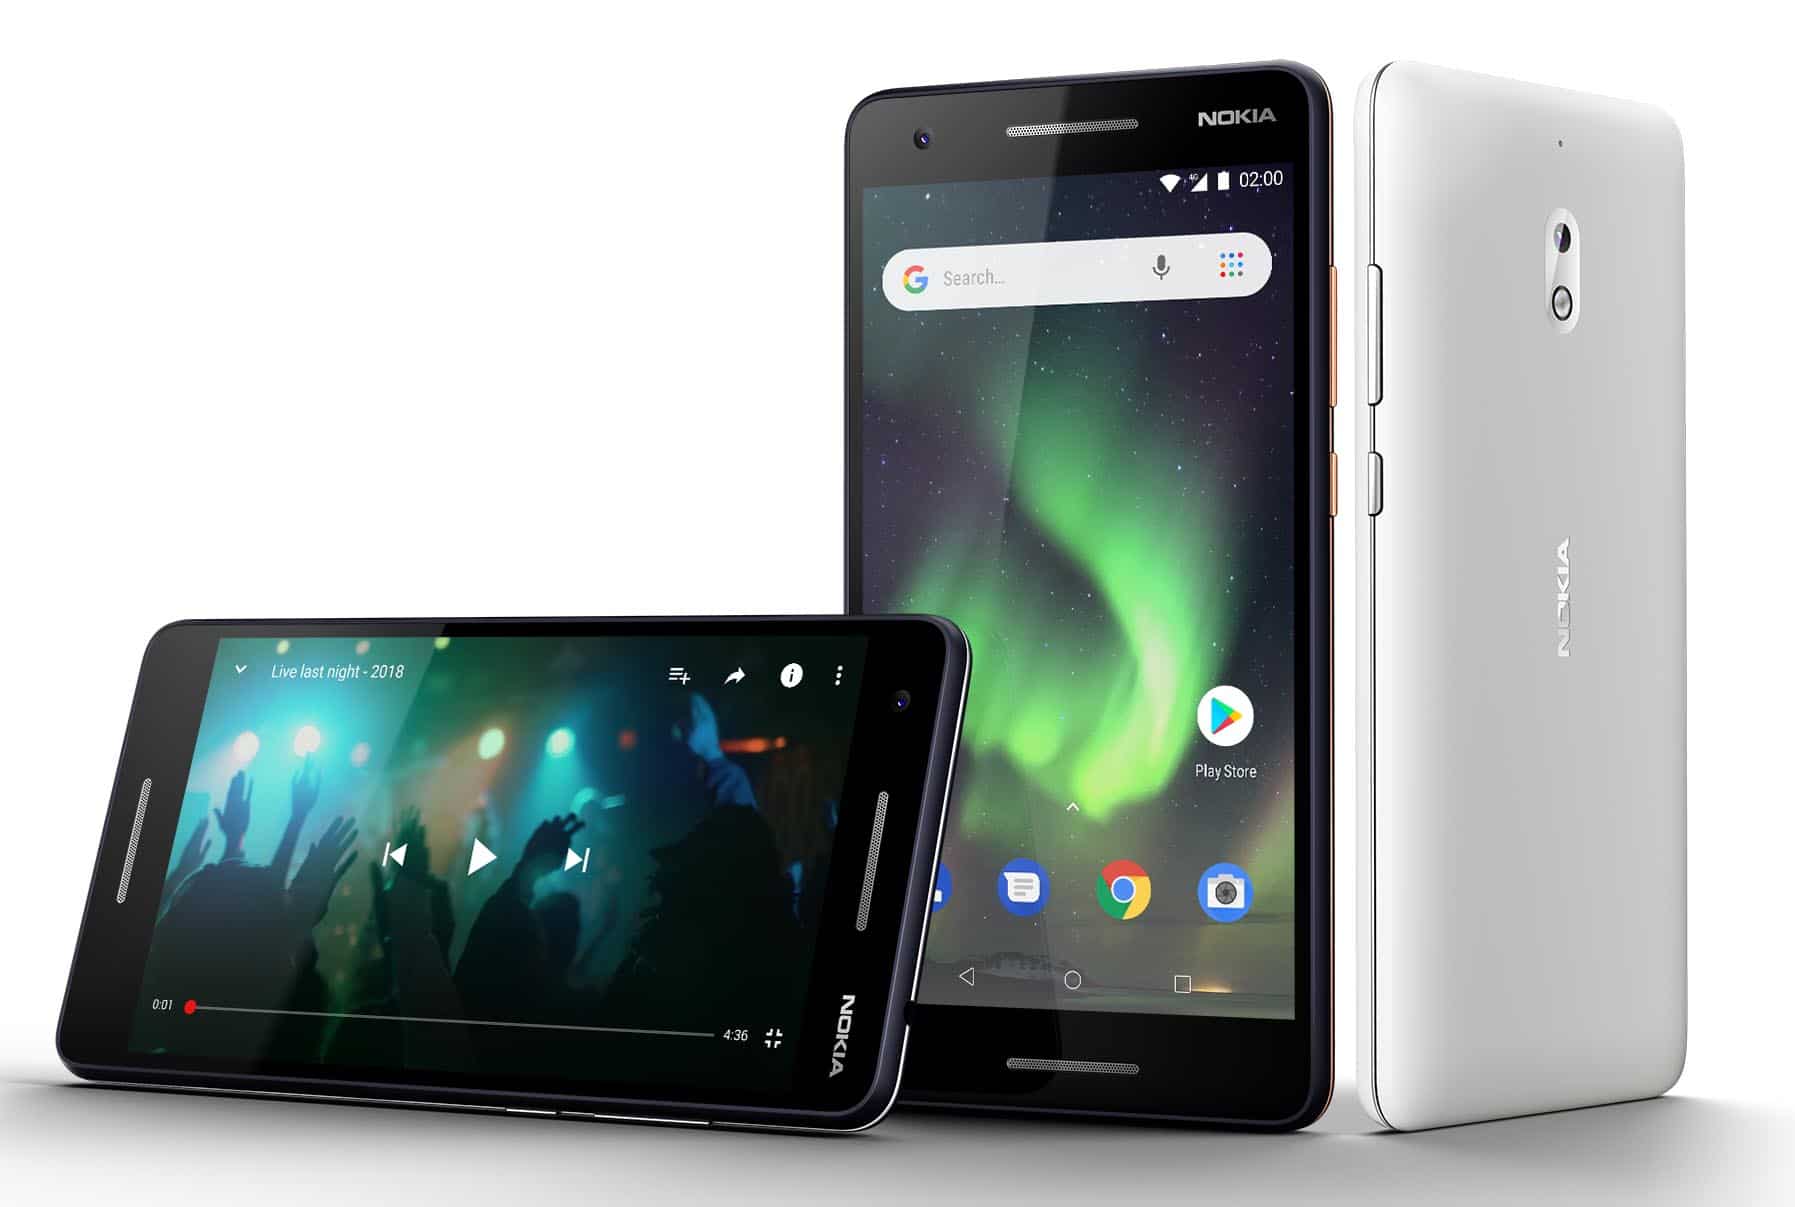 Nokia 2.1 chính thức được cập nhật lên Android 10 (Phiên bản Go) - Nâng cao khả năng trải nghiệm cho người dùng